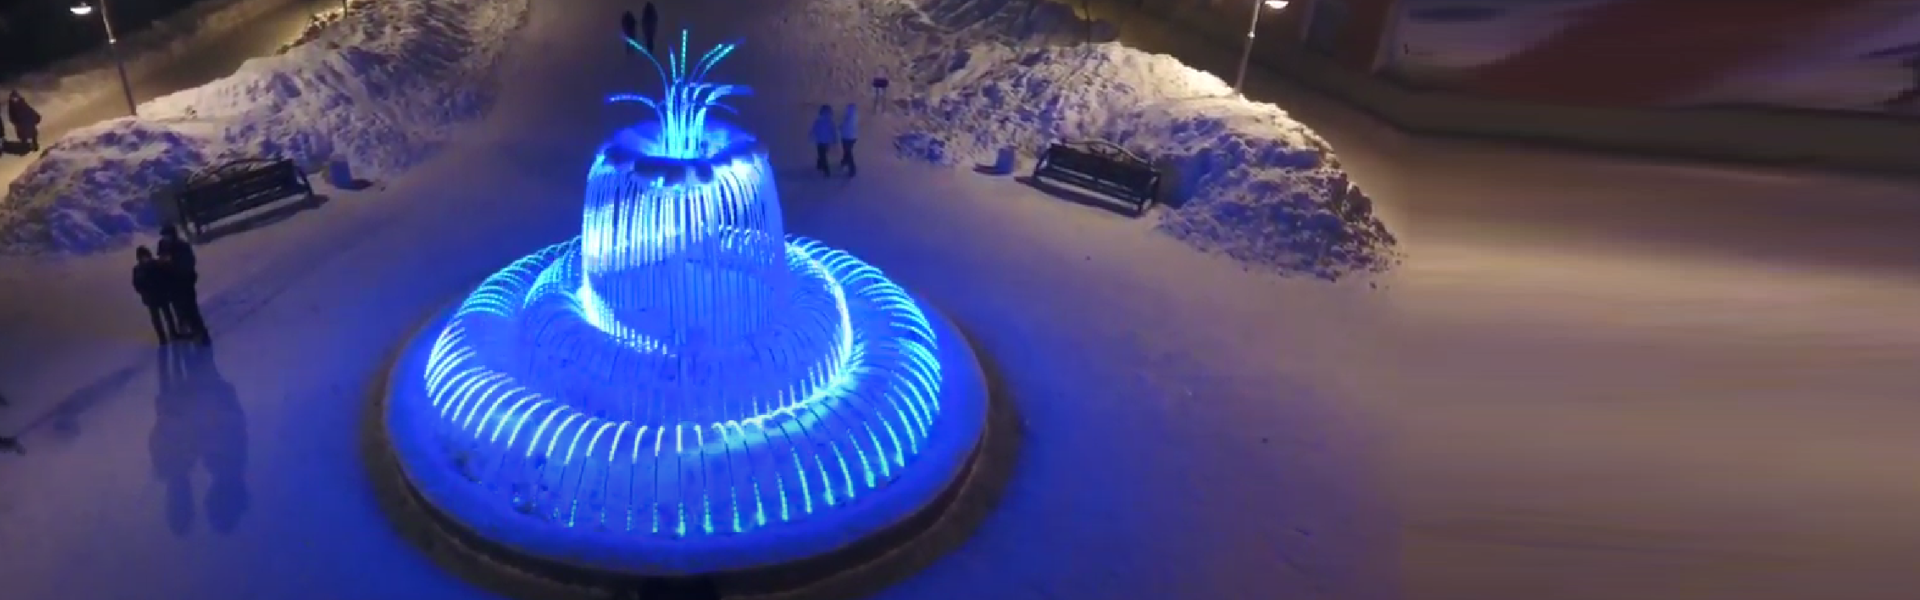 Светодиодный фонтан «Медуза»